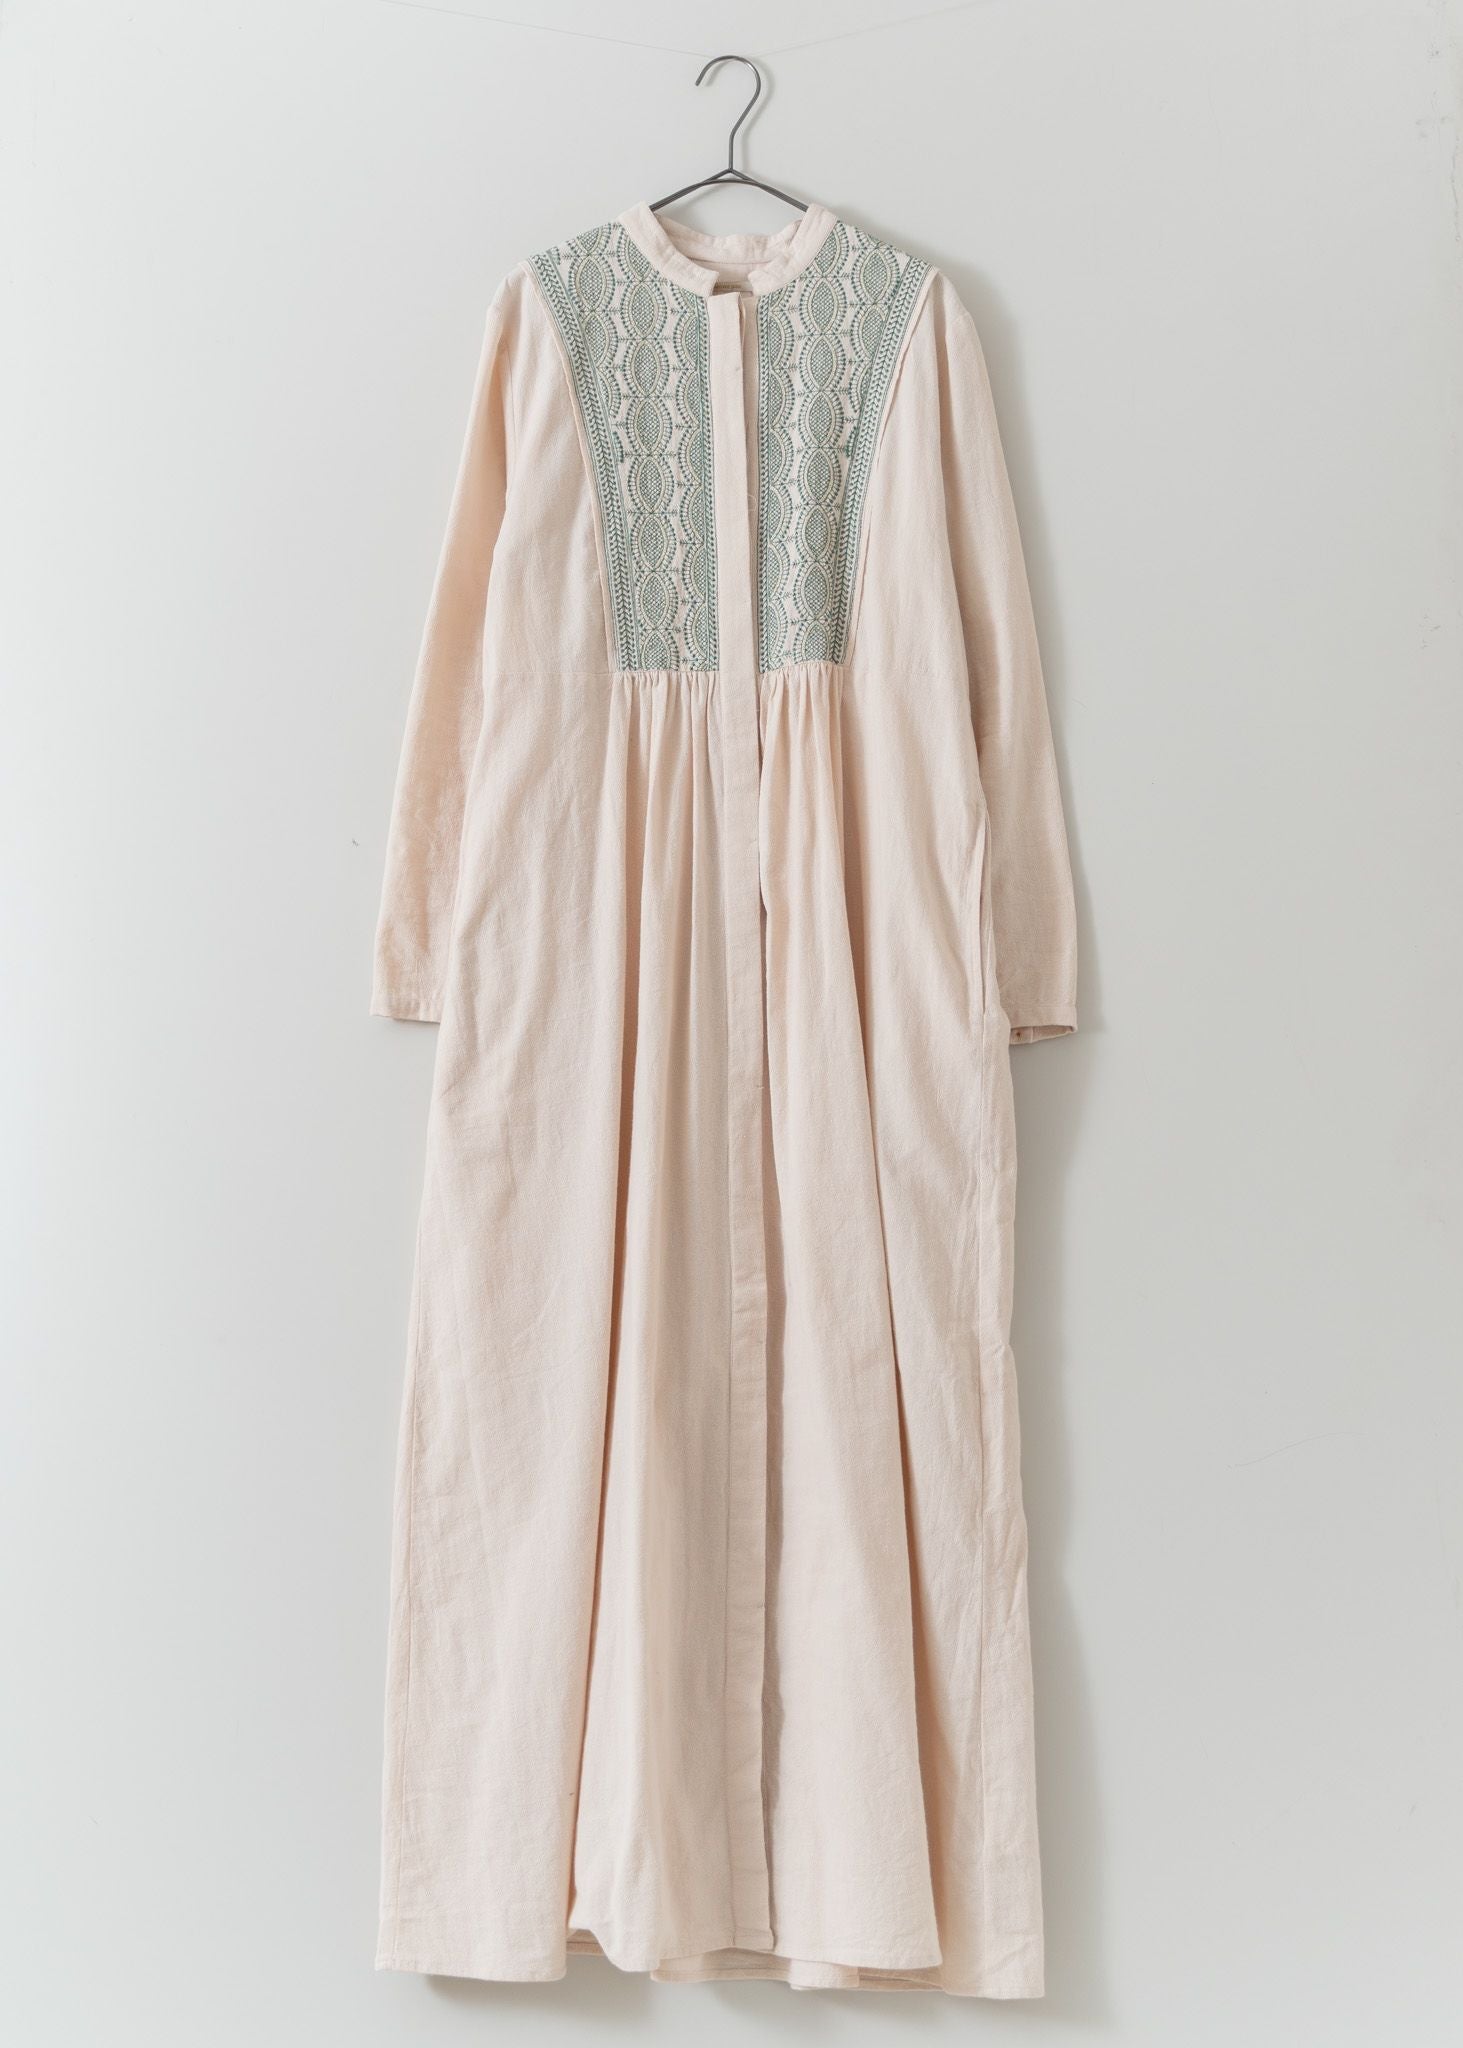 ヌキテパCrimp Cotton Solid Embroidery Dress品番010432GQ3